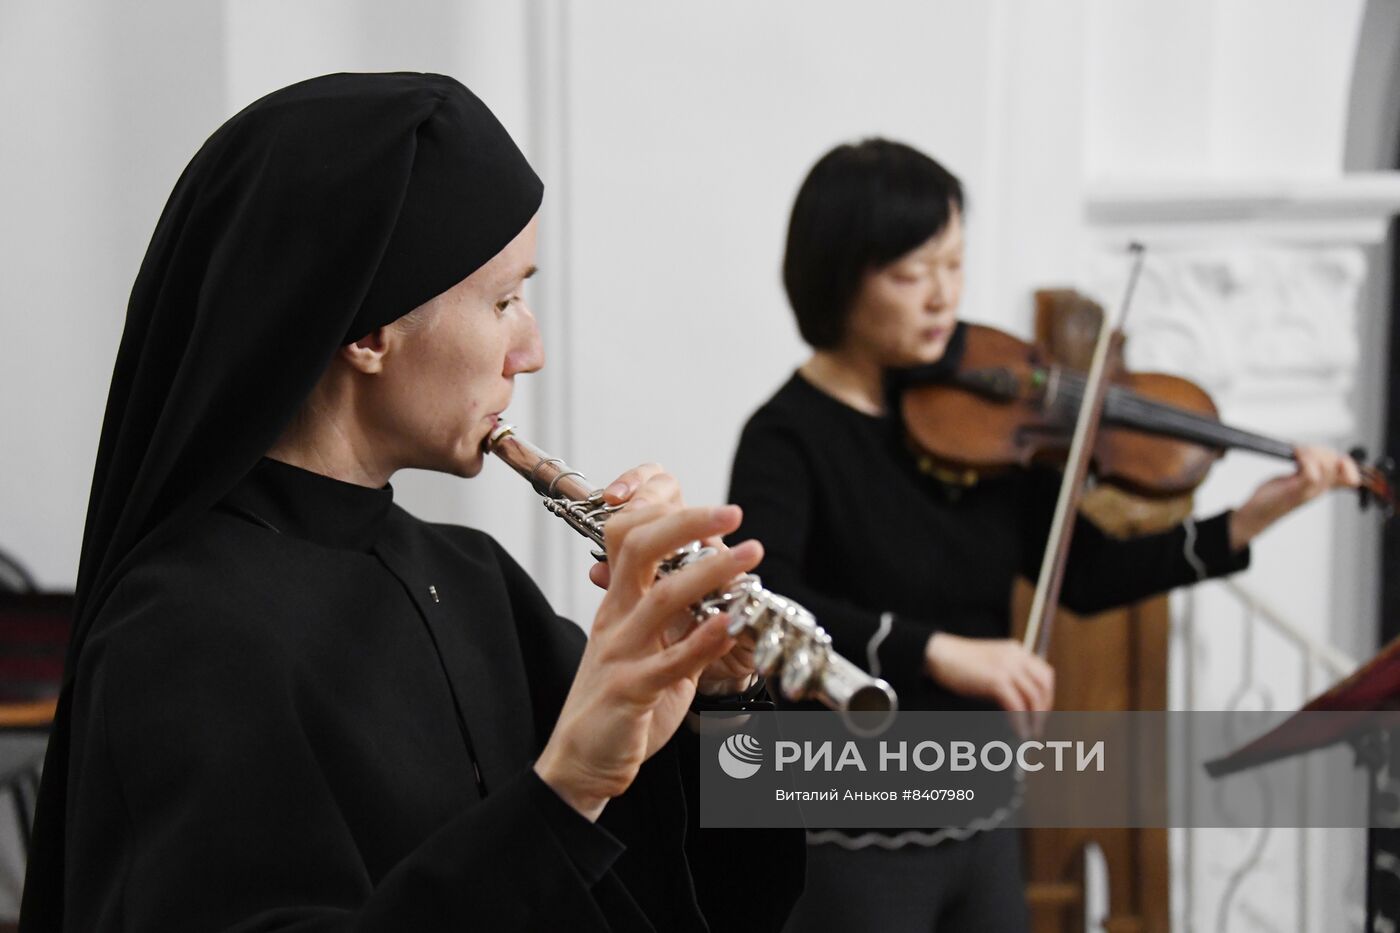 Празднование католической Пасхи в России